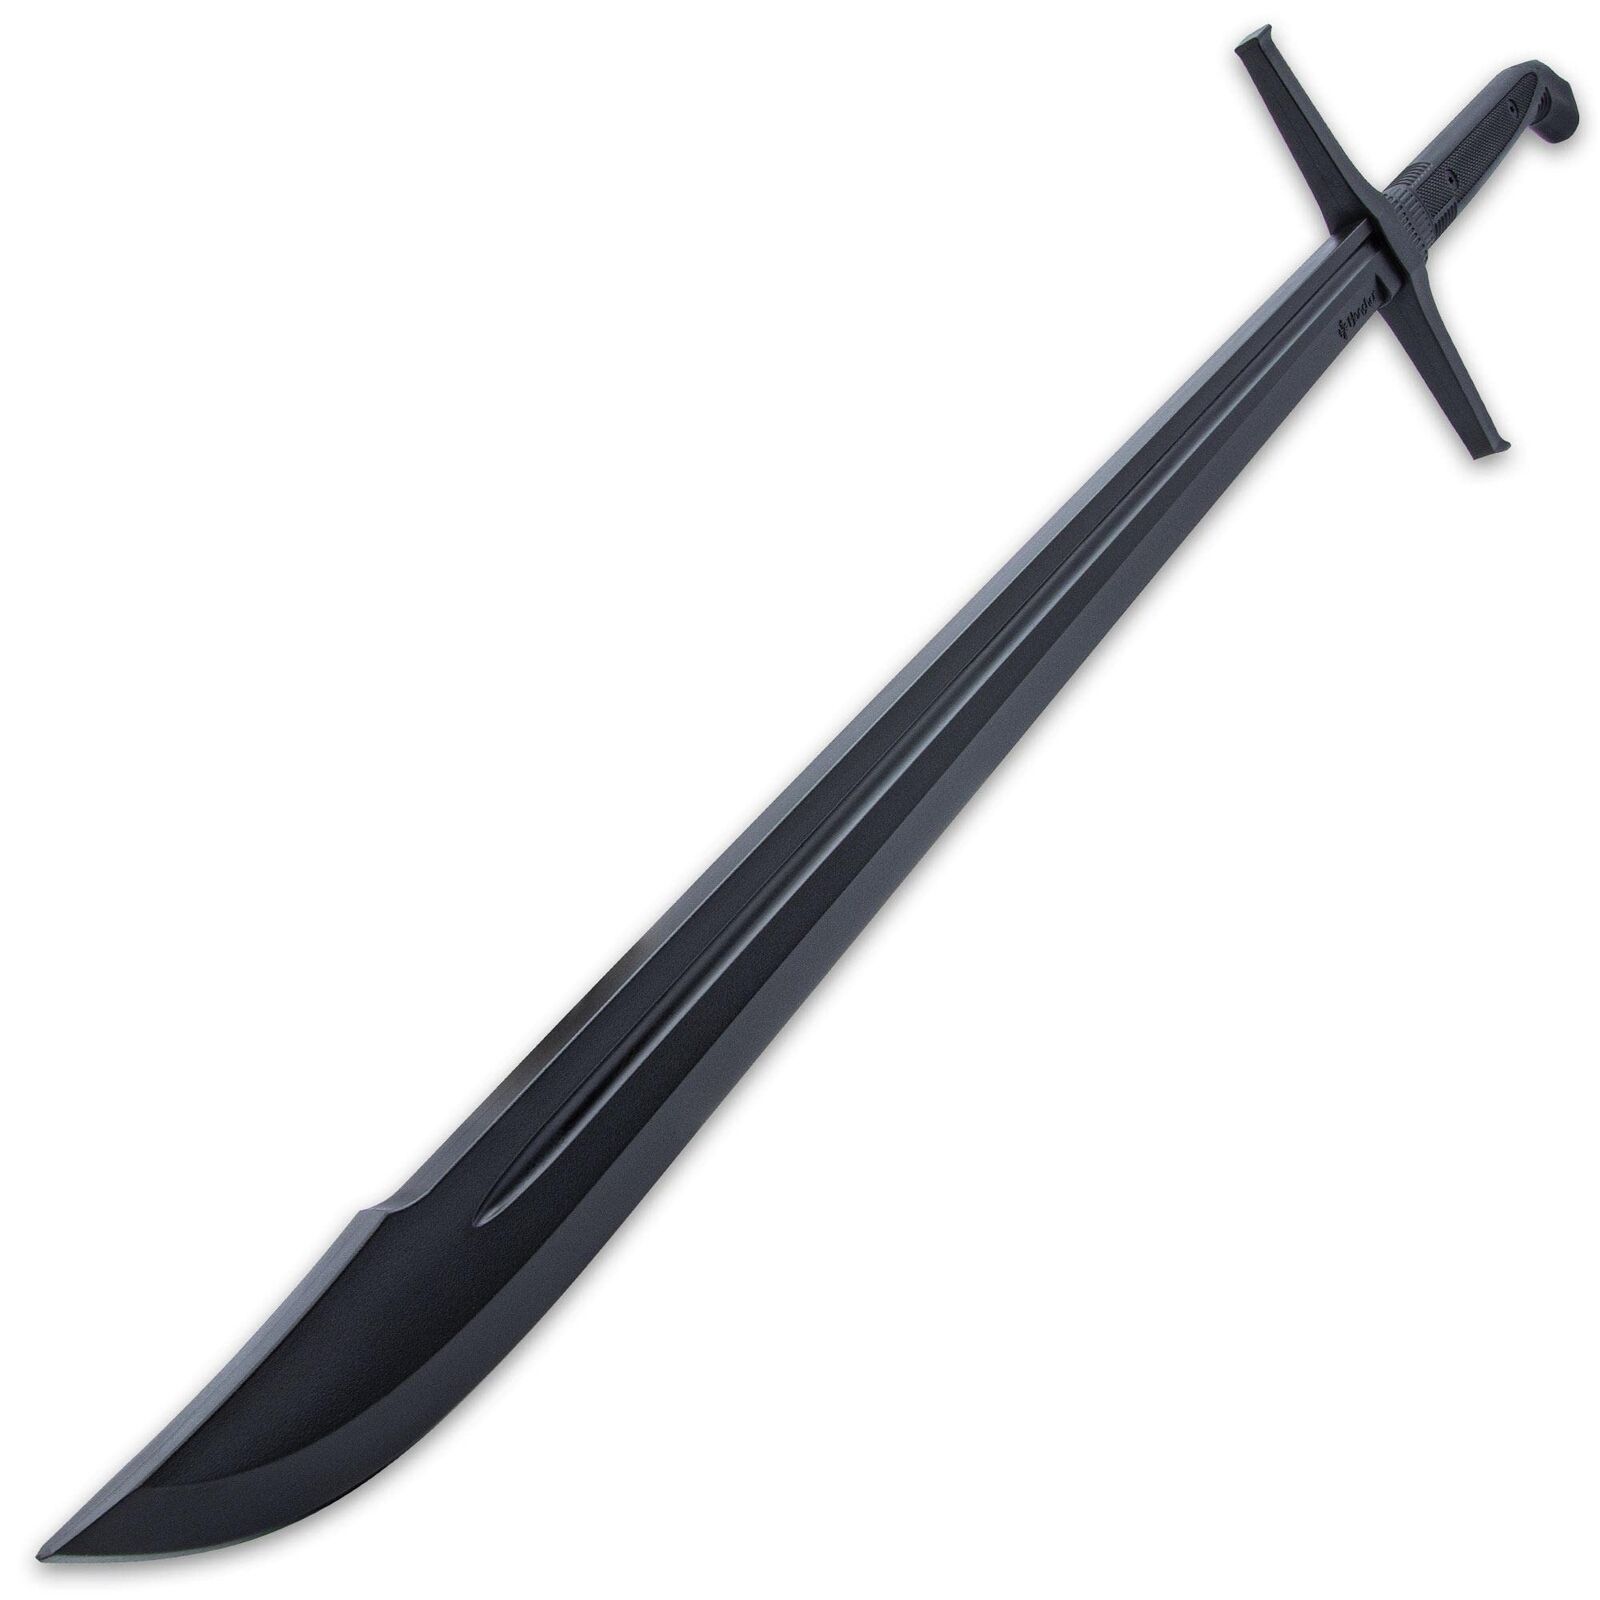 Honshu Boshin Practice Grosse Messer Sword | Practice Sword | All Skill Levels